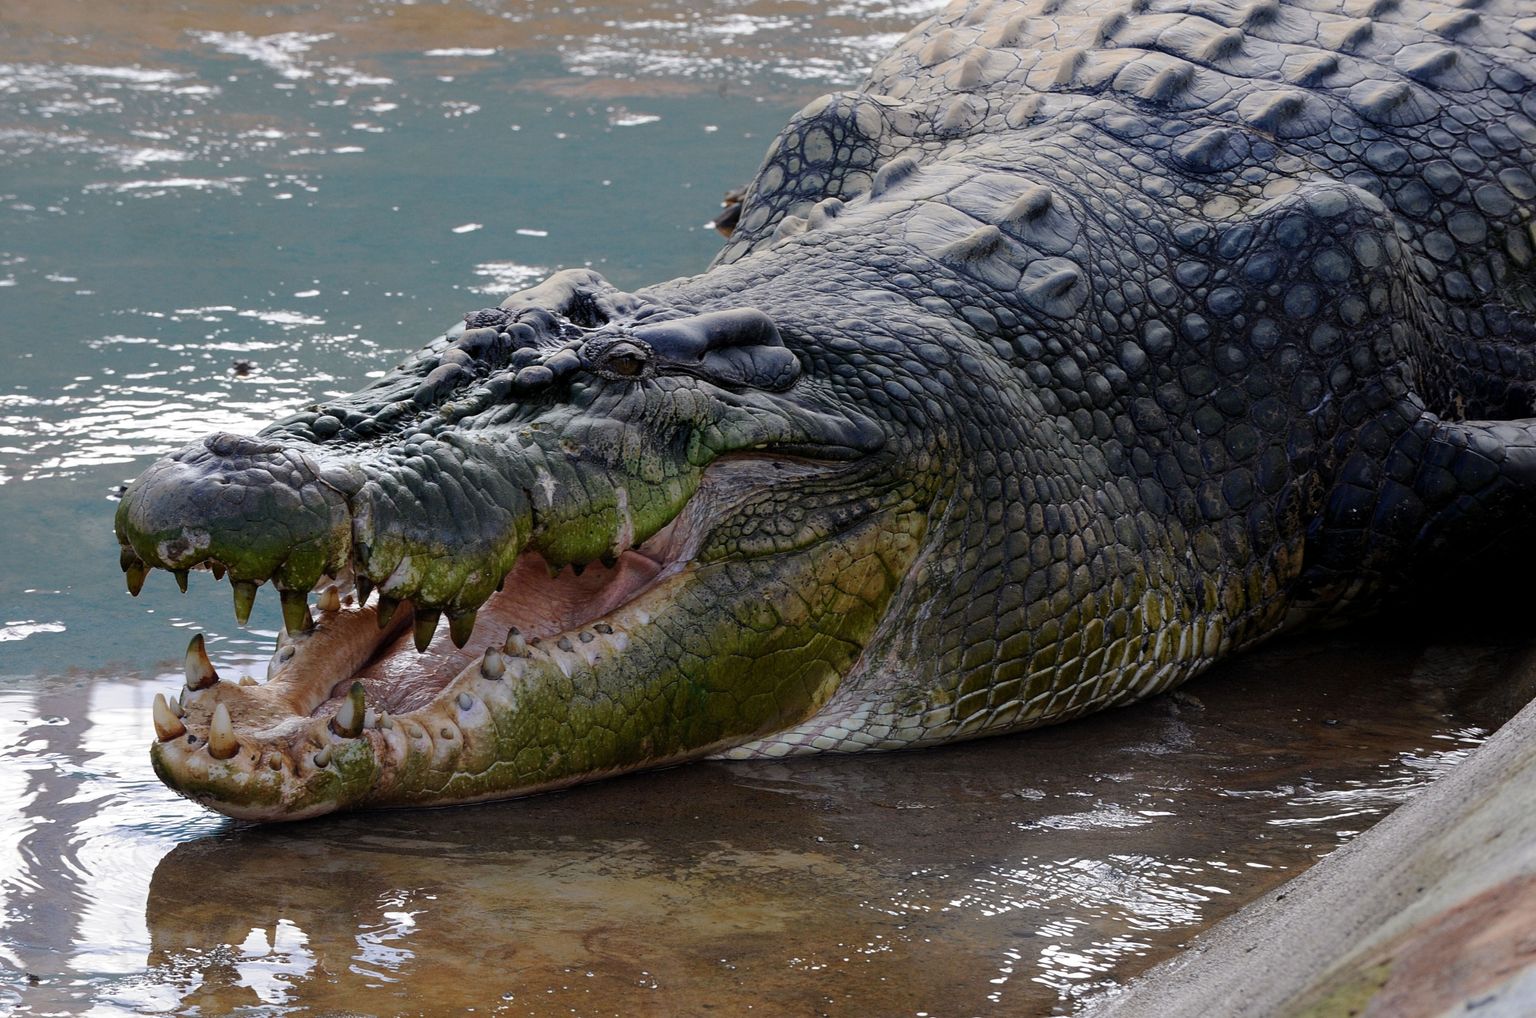 6,4 meetri pikkune krokodill Lolong